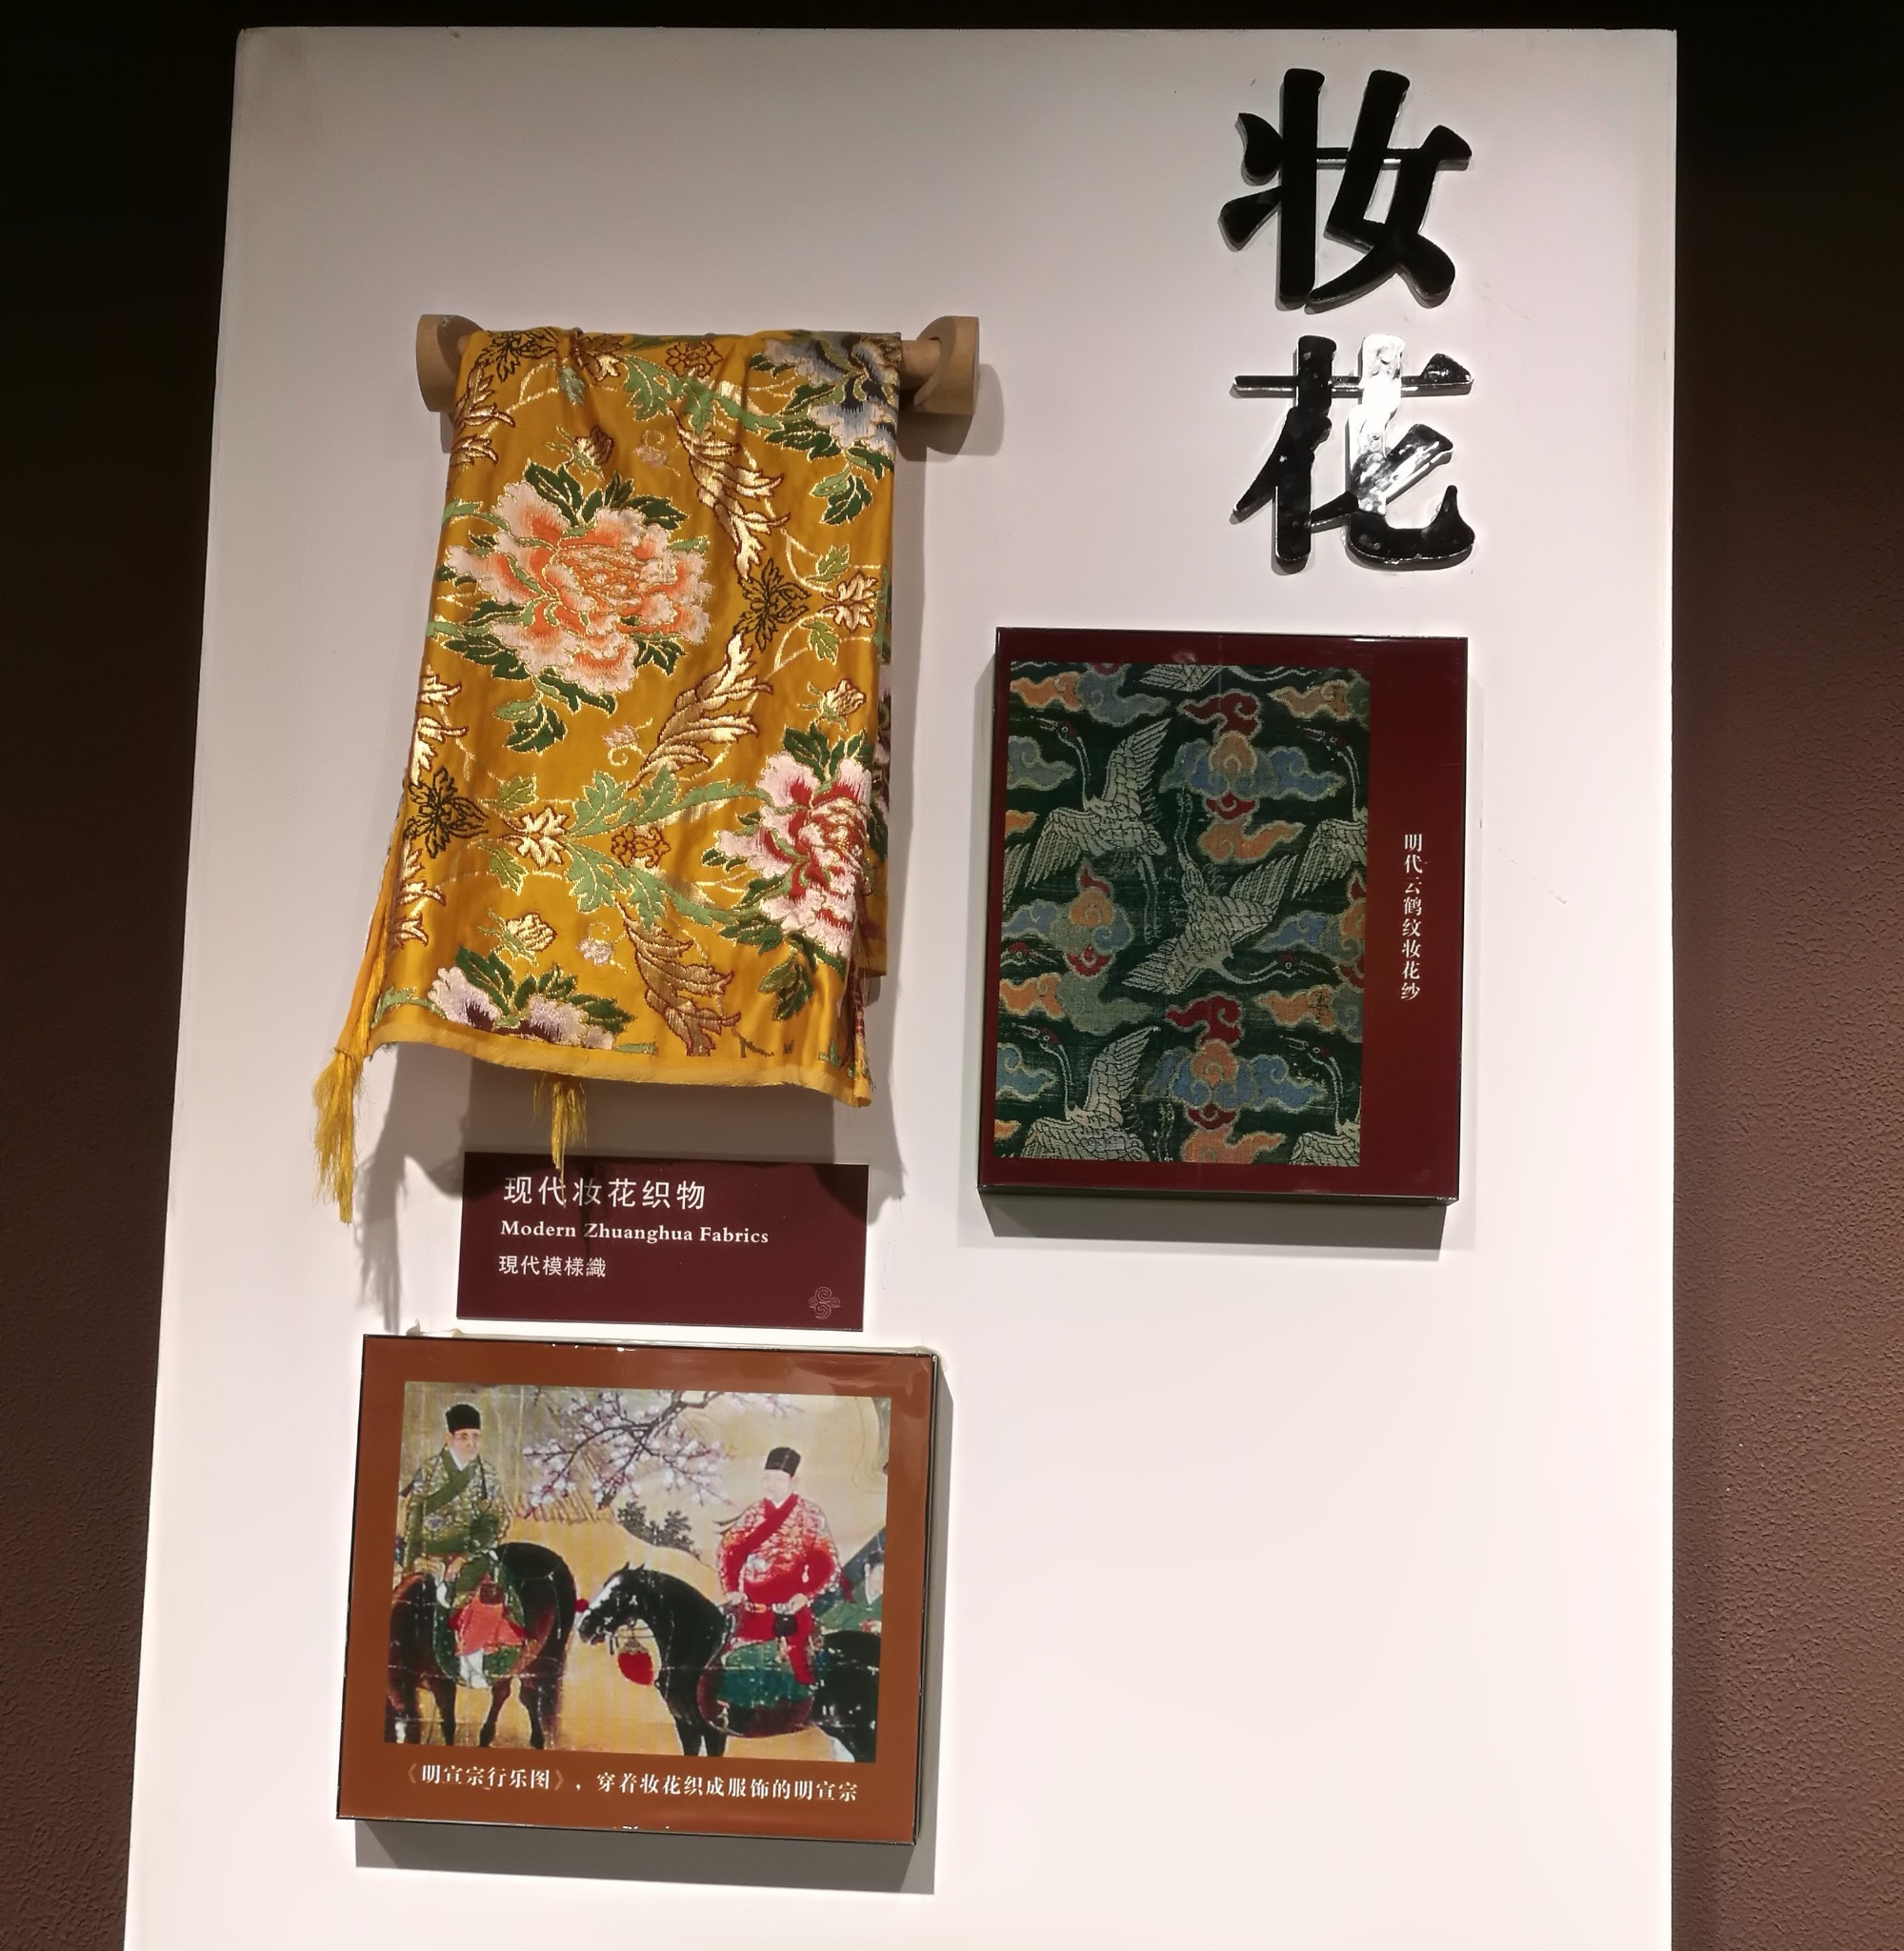 四川丝绸博物馆        